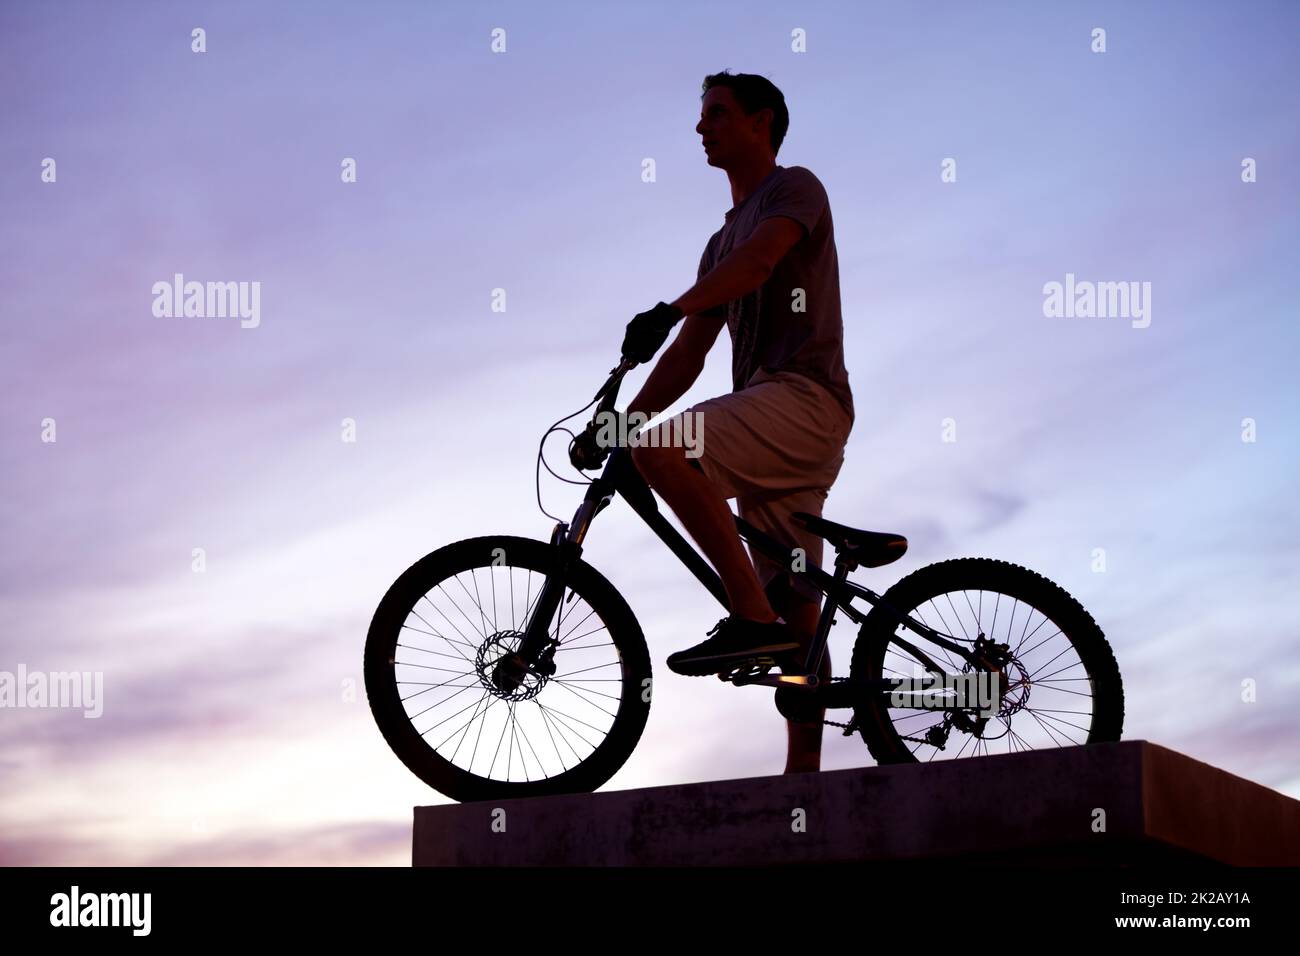 Roi de la ville. Silhouette d'un homme qui a fait son vélo au crépuscule. Banque D'Images